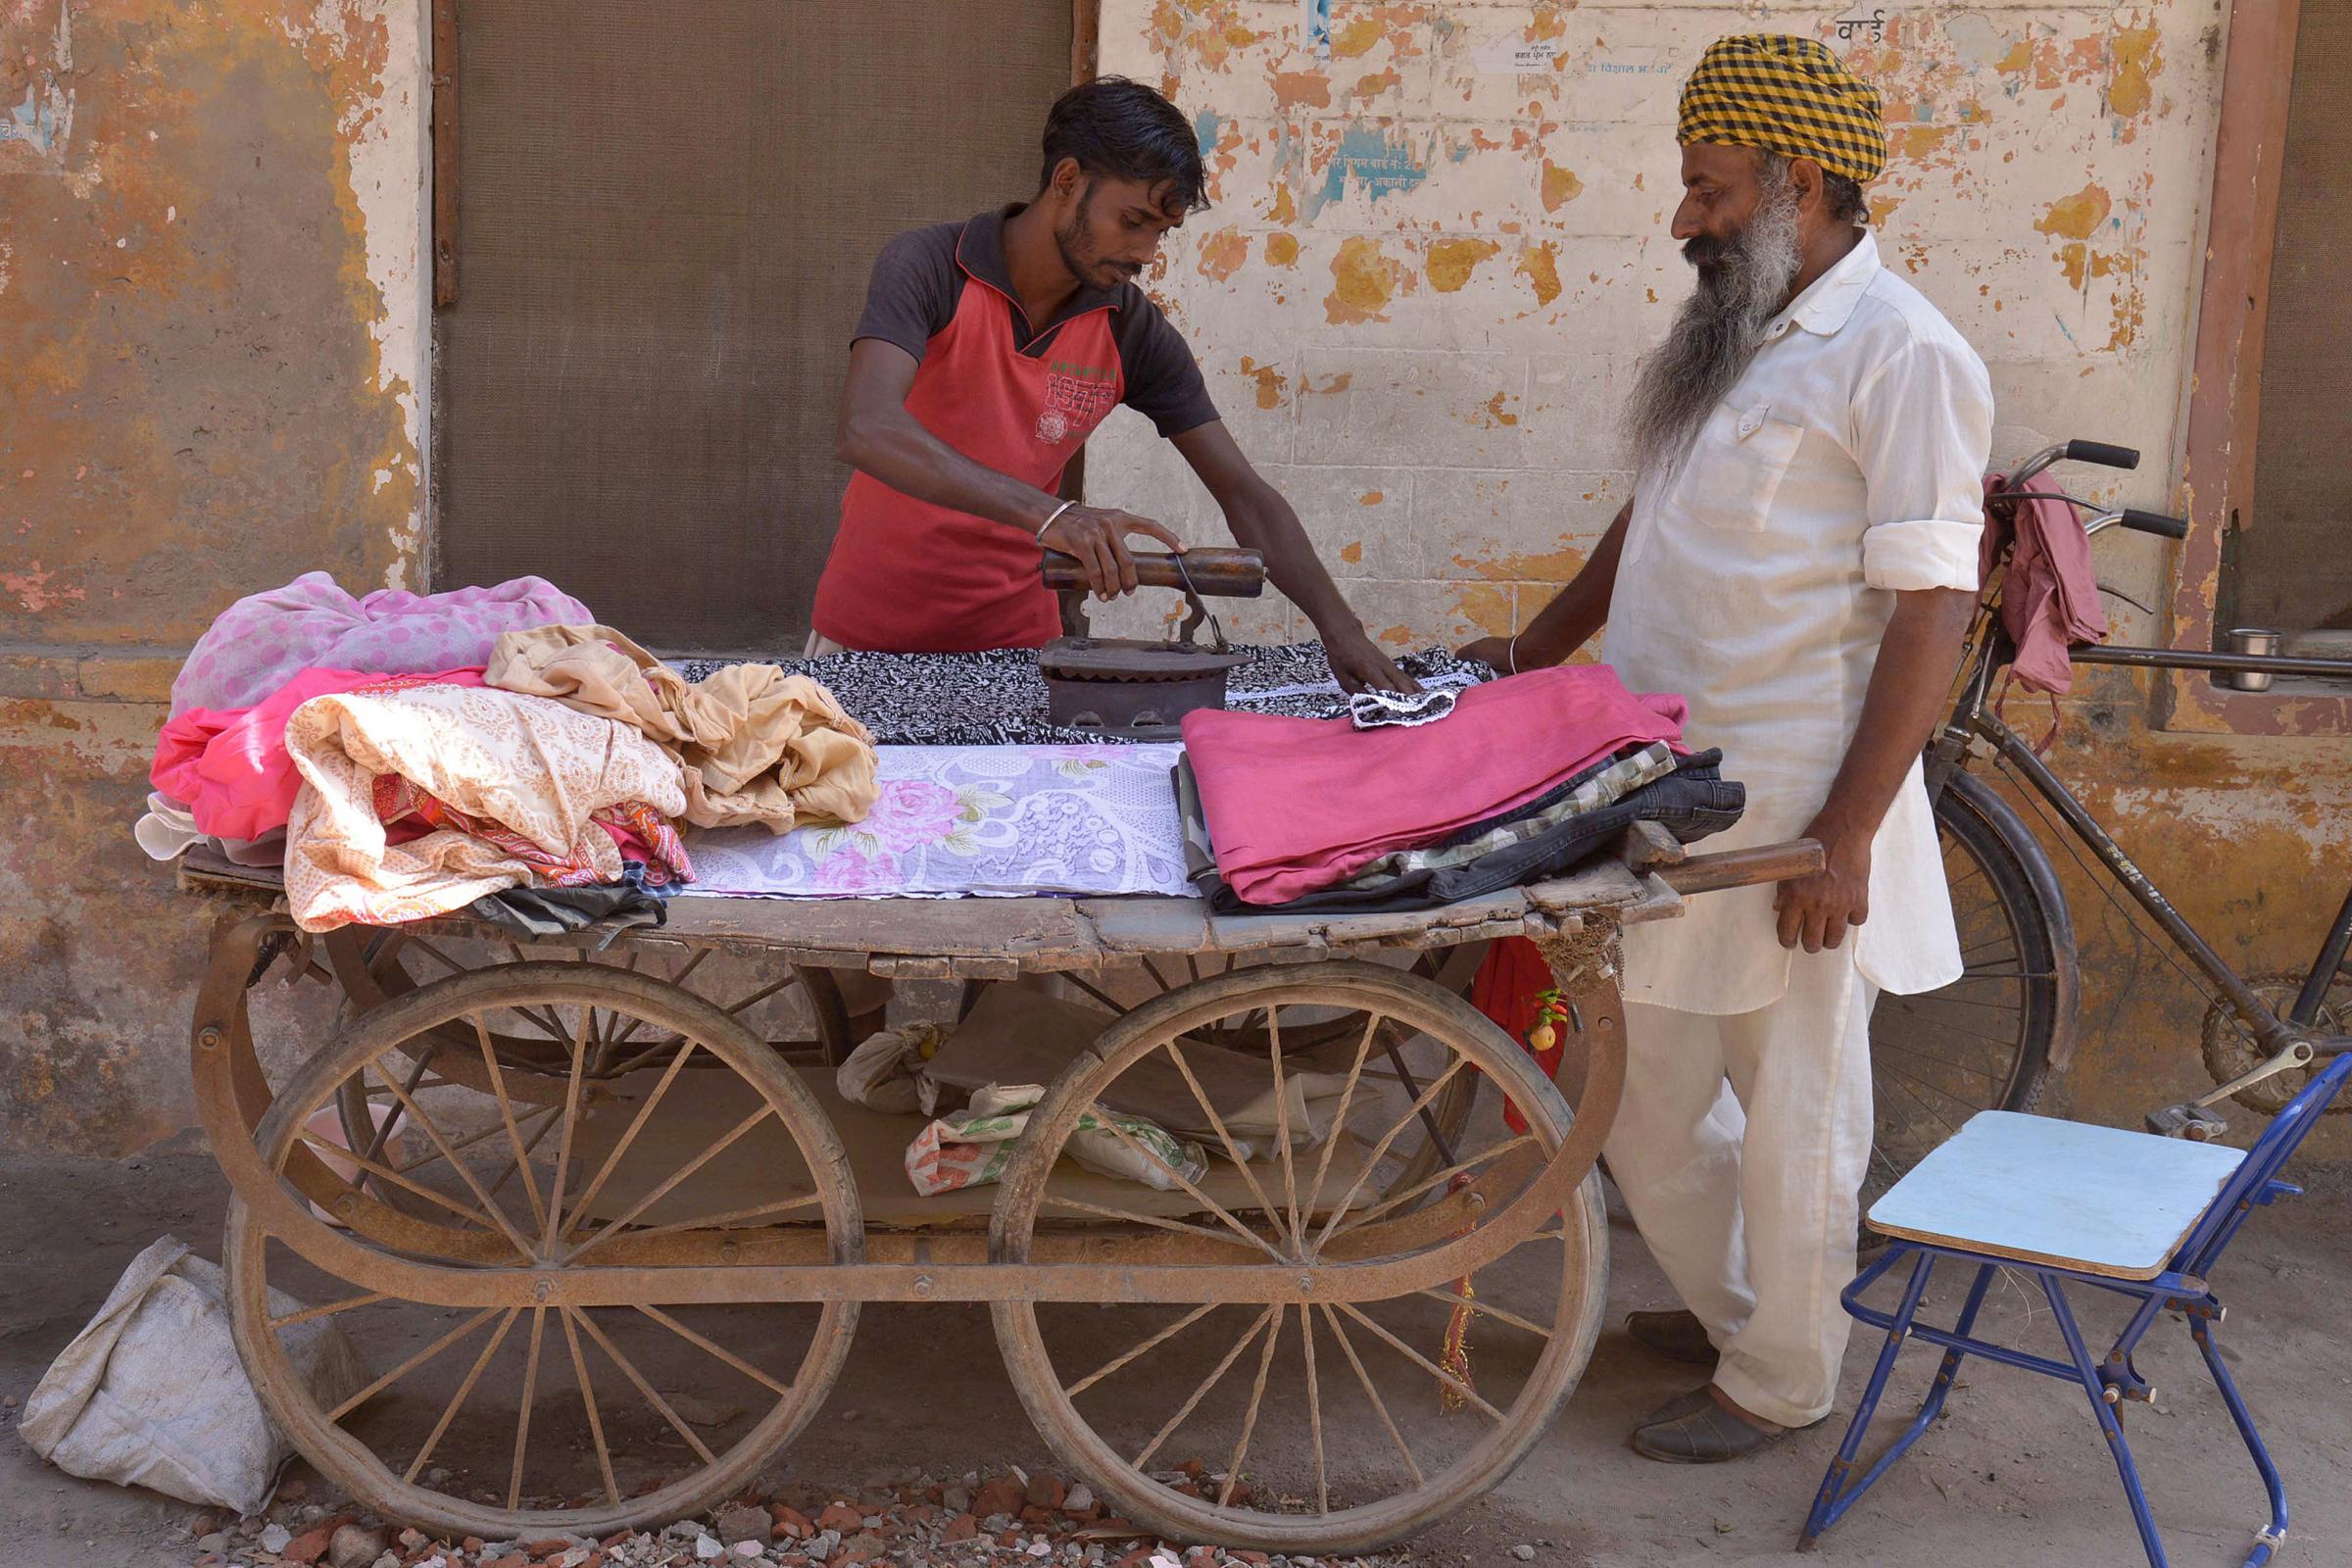 Ironing vendors in India